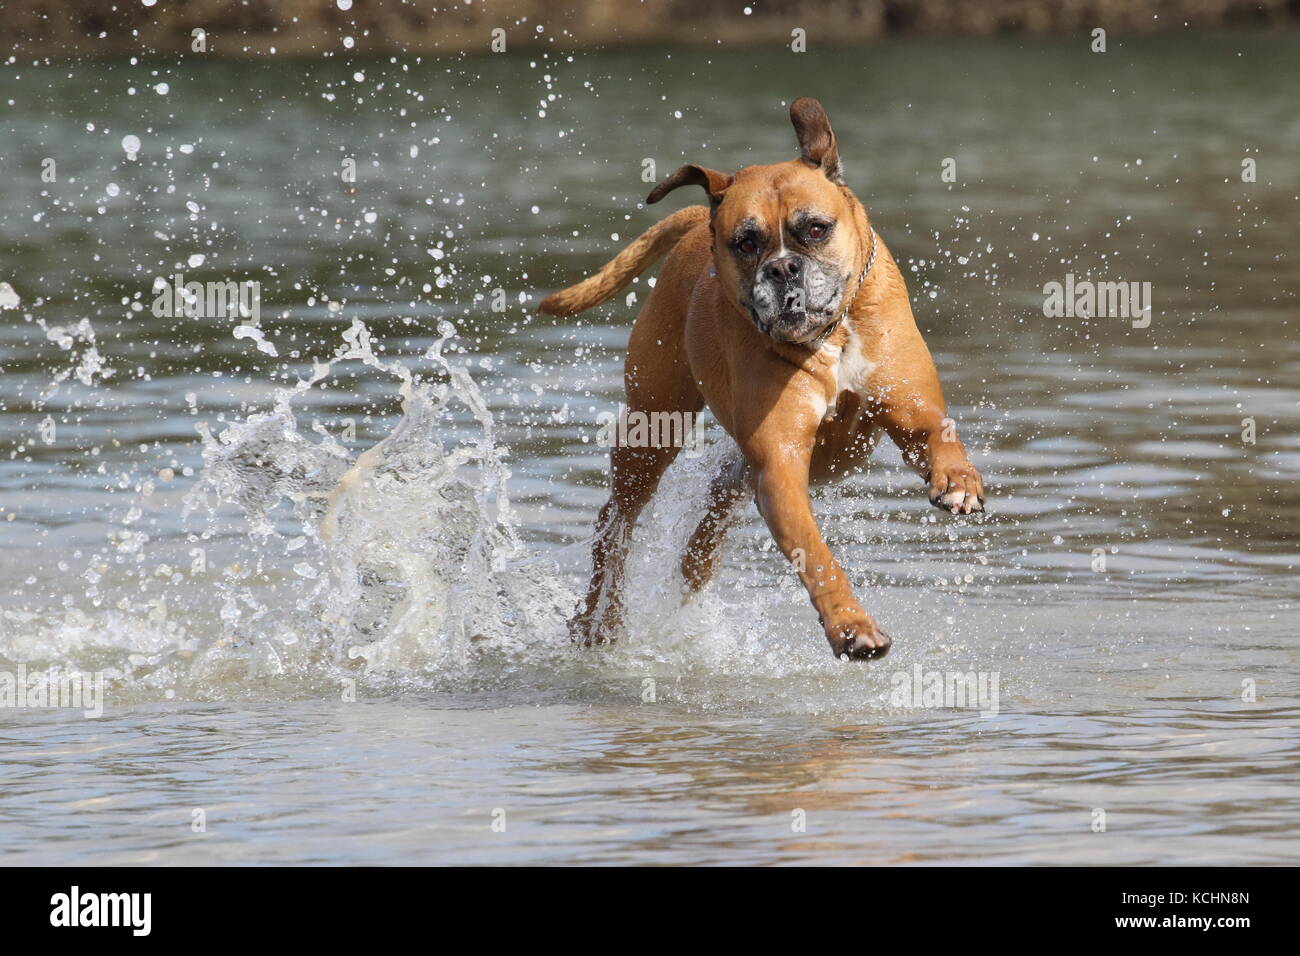 Boxer perro corriendo alegremente a través del agua Foto de stock